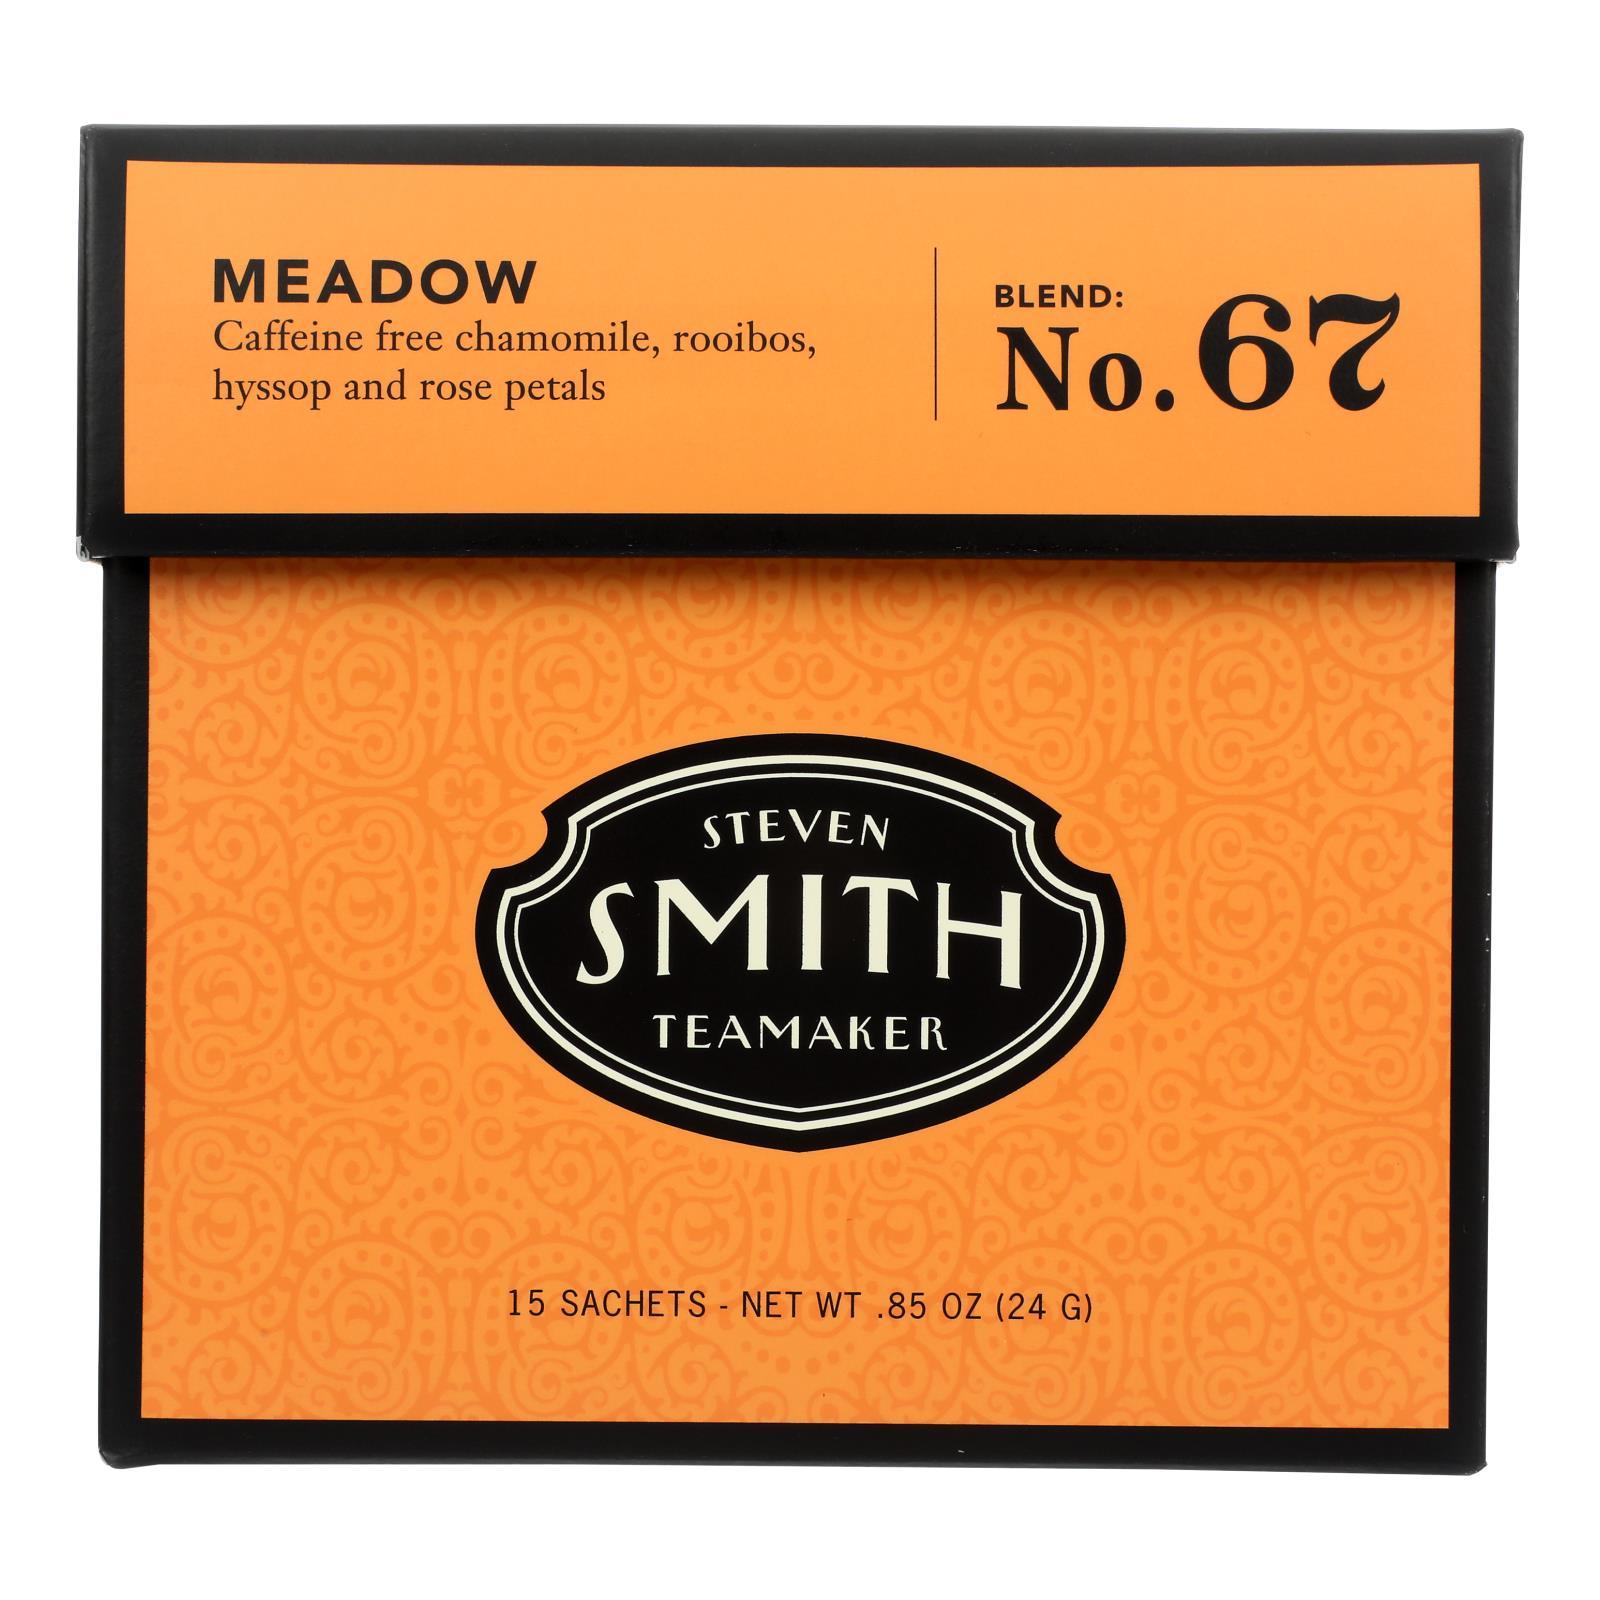 Smith Teamaker Herbal Tea - Meadow - Case Of 6 - 15 Bags - Loomini